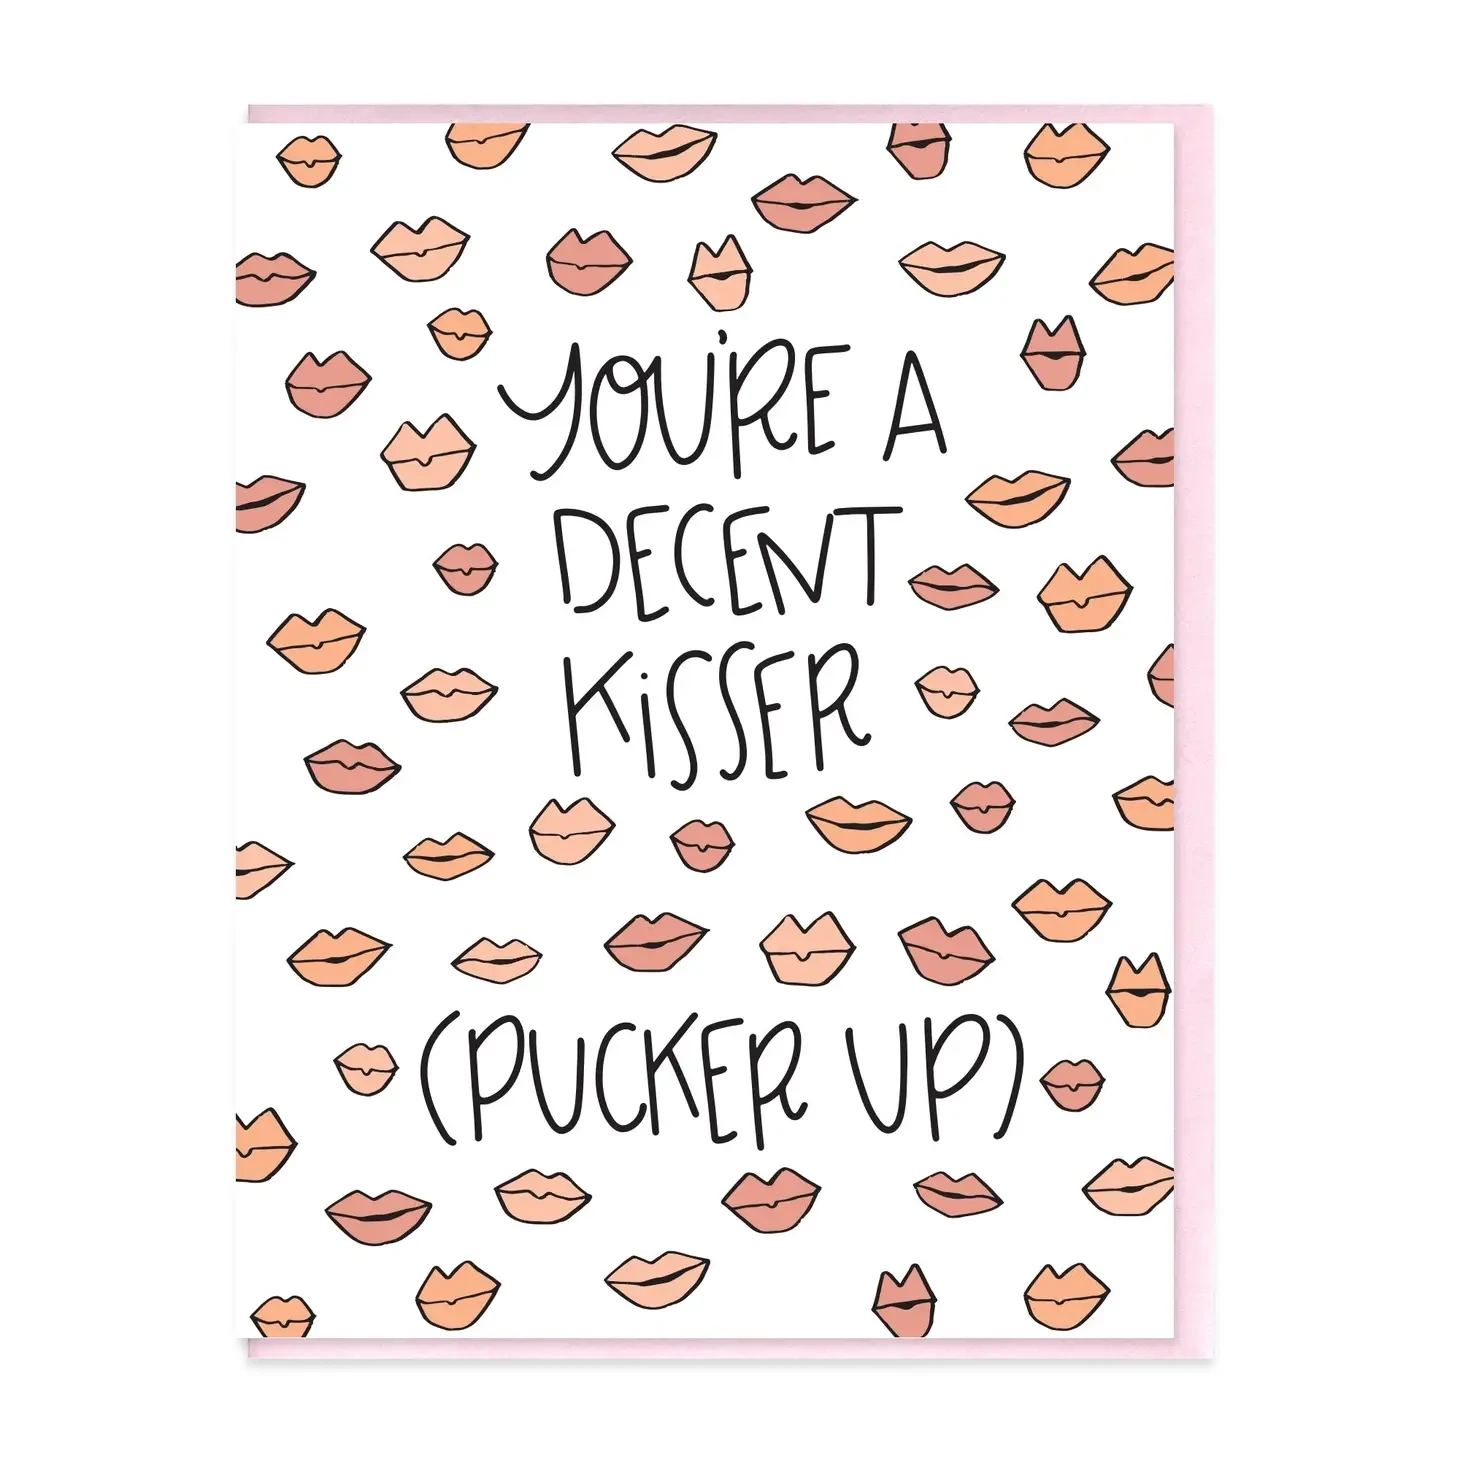 Decent Kisser Card